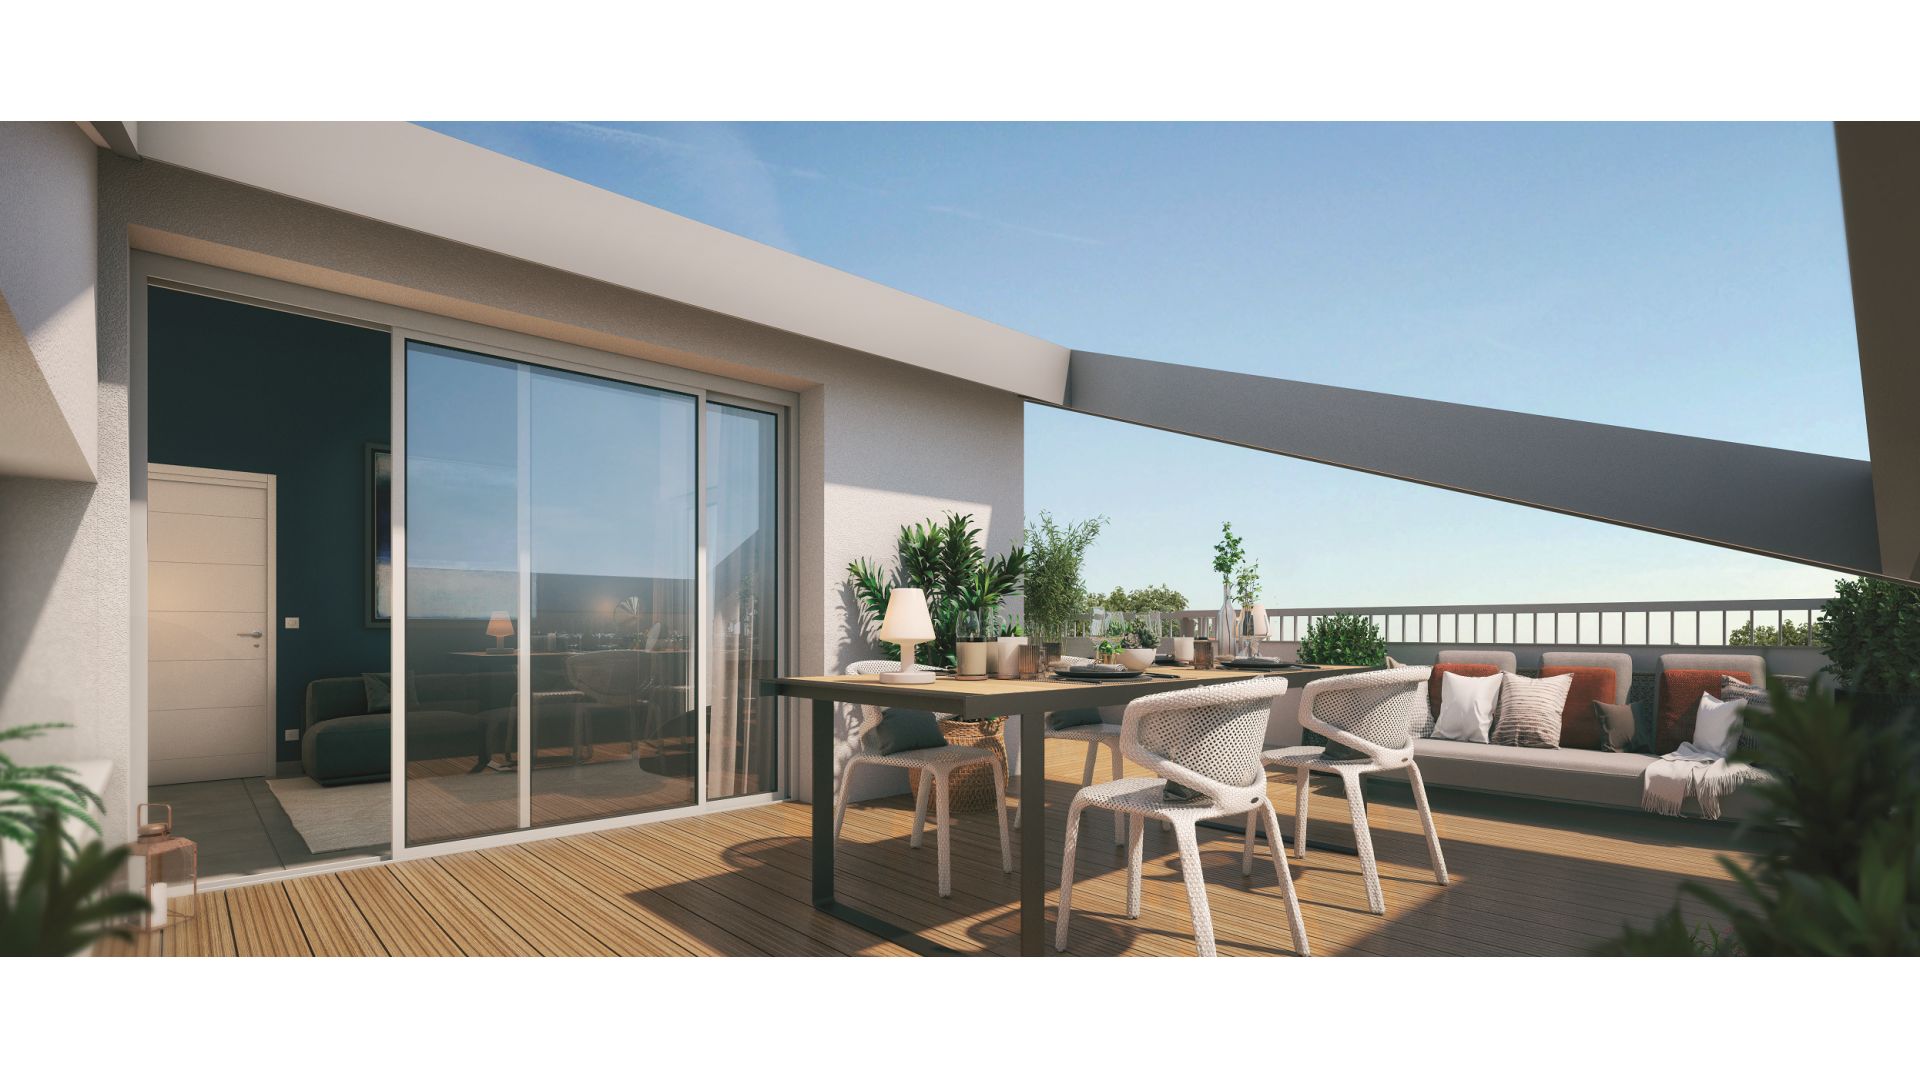 Greencity immobilier - achat appartements neufs du T2 au T4 - Résidence Le First - 31400 Toulouse Saint-Agne - vue terrasse